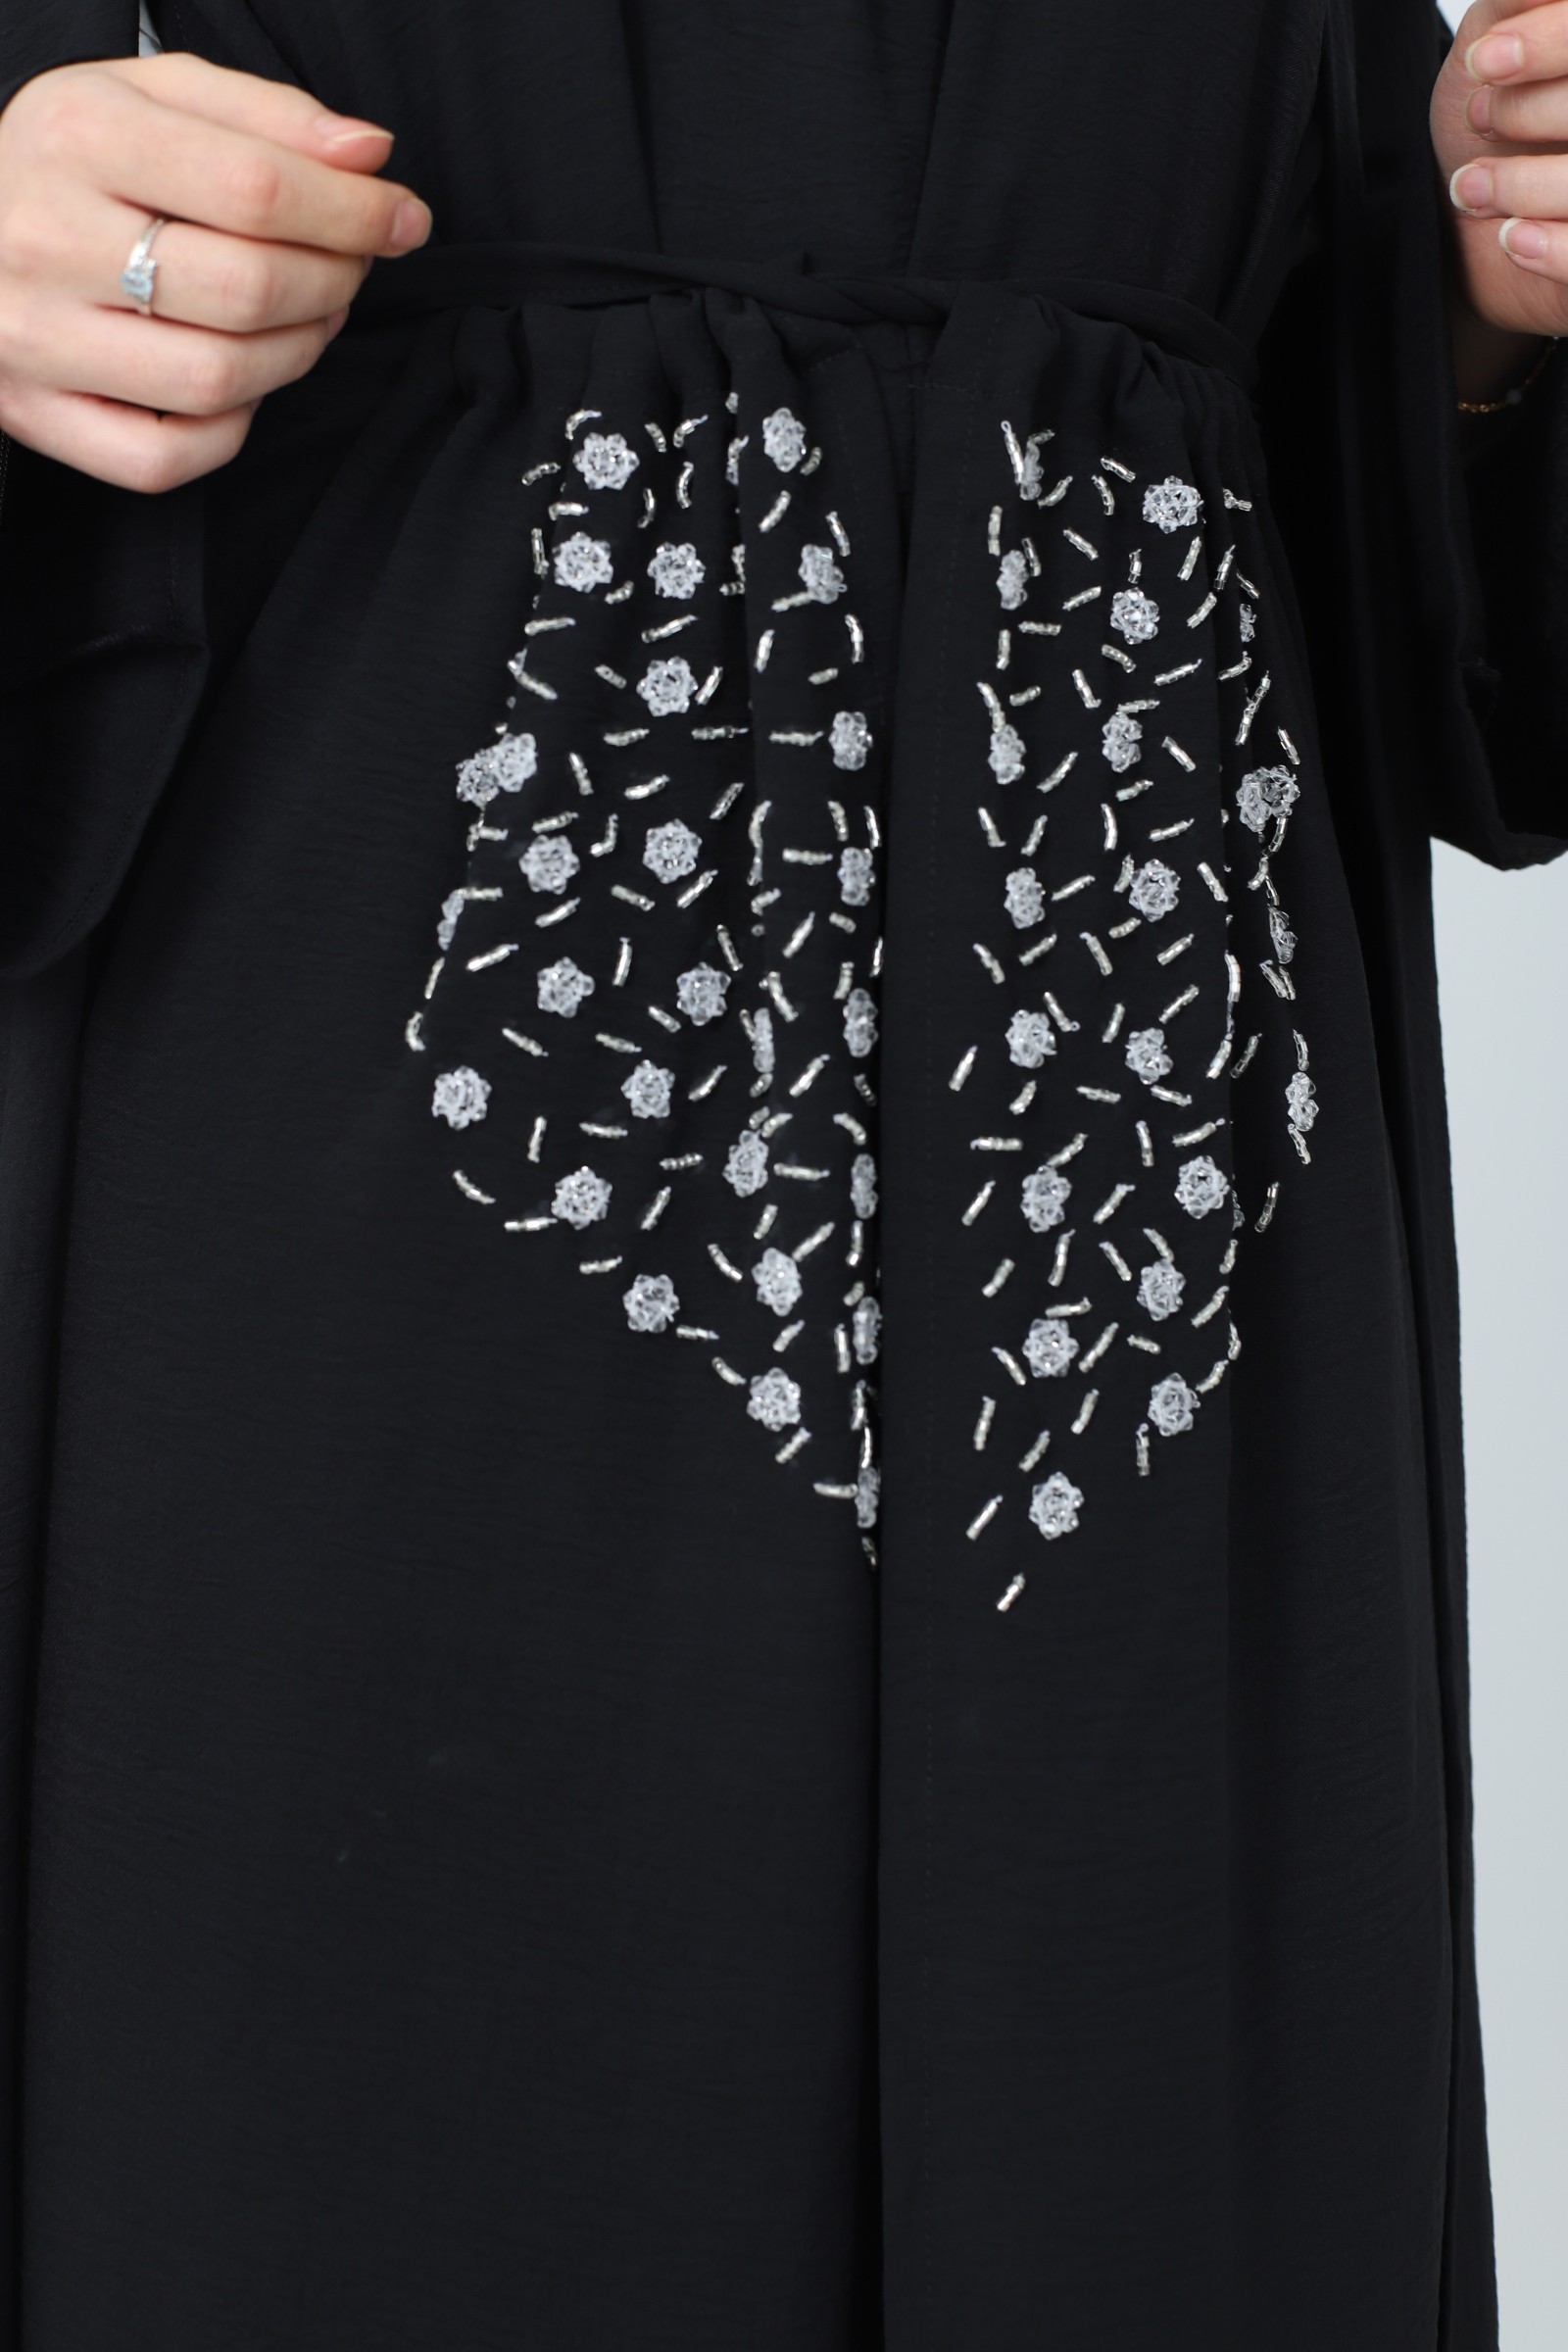 Abaya Dubai de luxe pour femme musulmane couleur noir